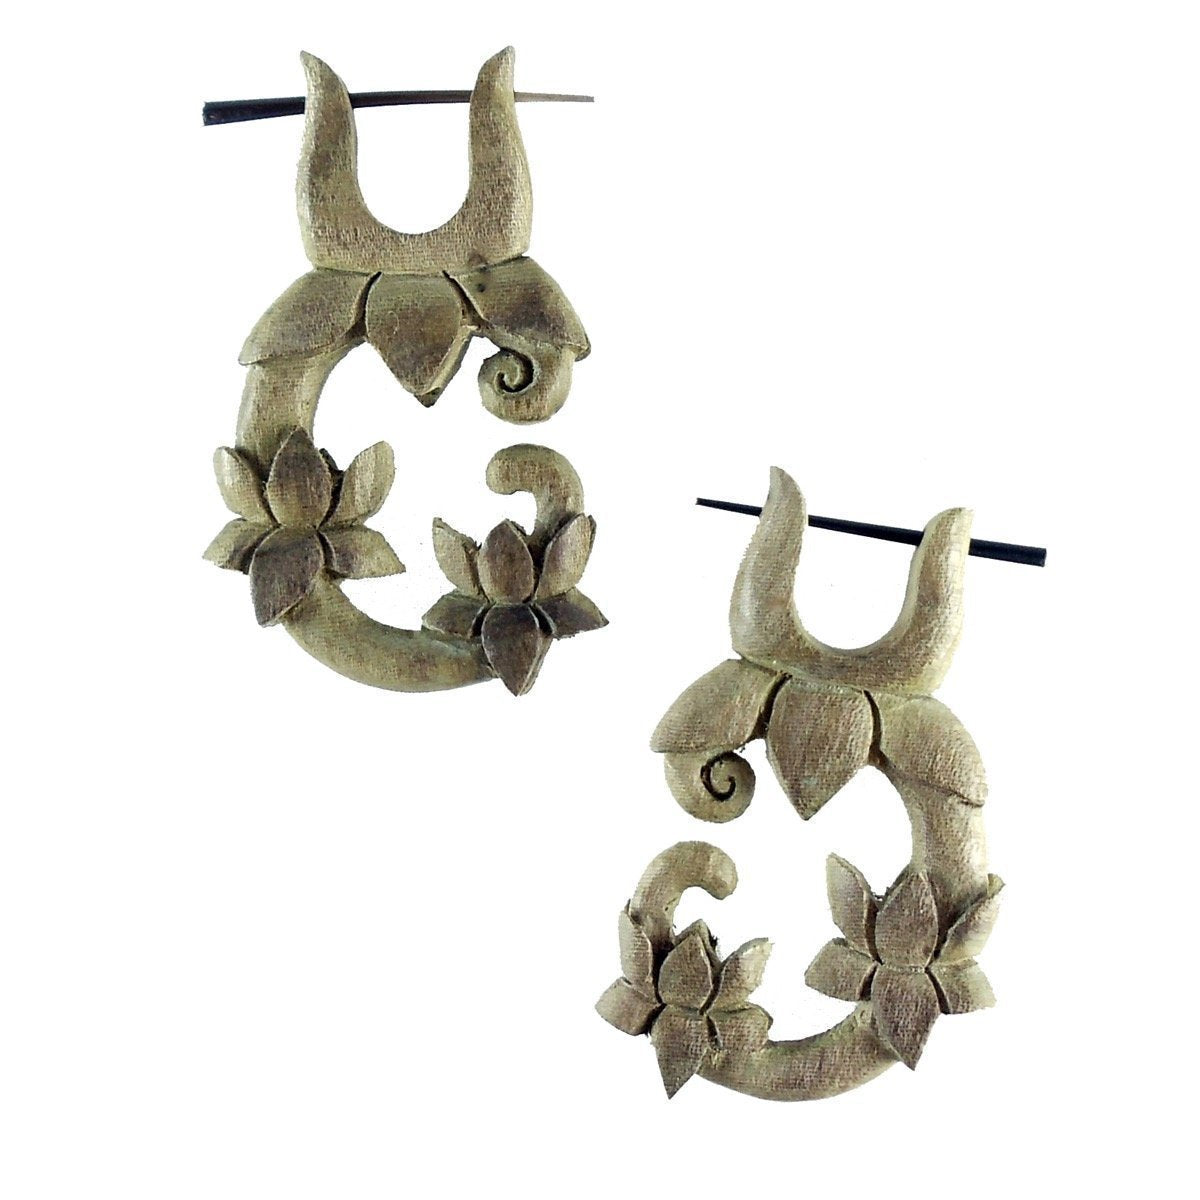 Wood Earrings :|: Lotus Vine. Hibiscus Wood Earrings, 1 inch W x 1 3/4 inch L. | Wood Earrings